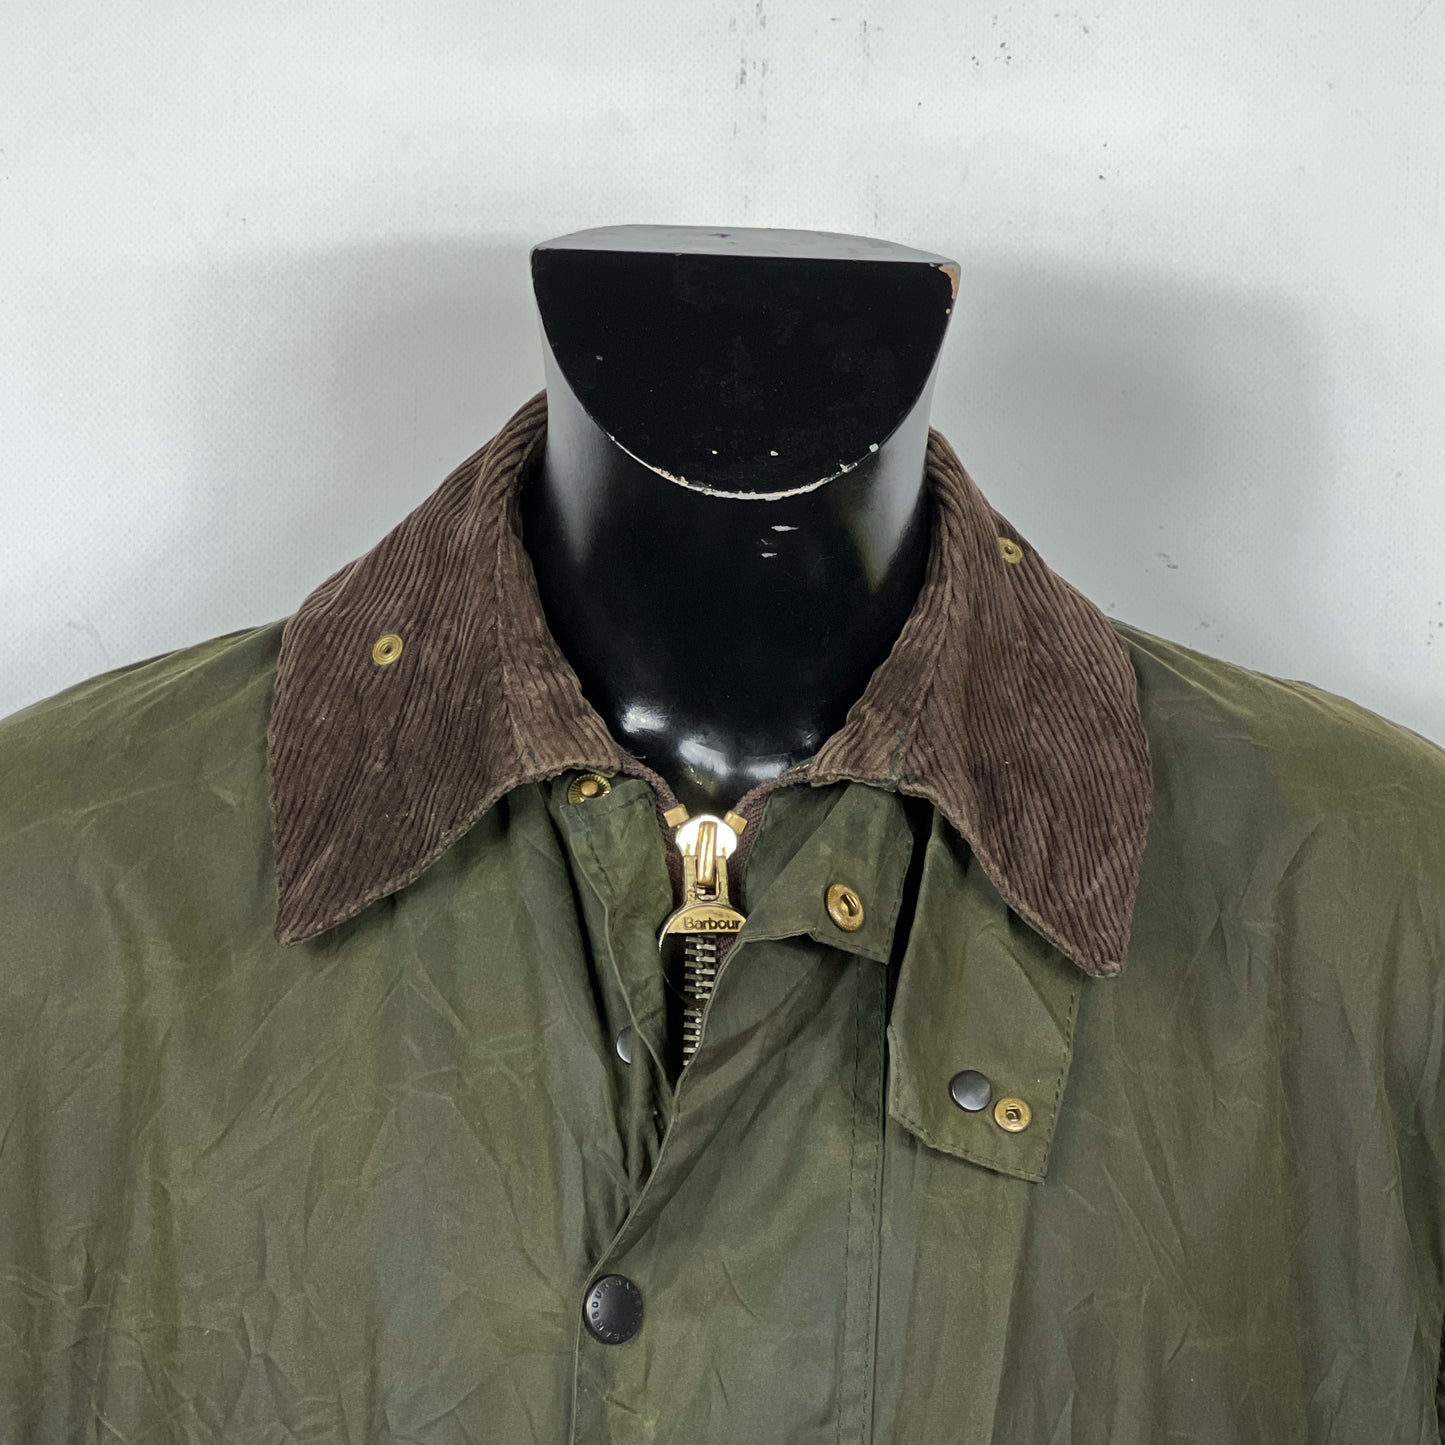 Giacca Barbour Border verde Vintage Cerata C42/107 cm - Green wax jacket Large